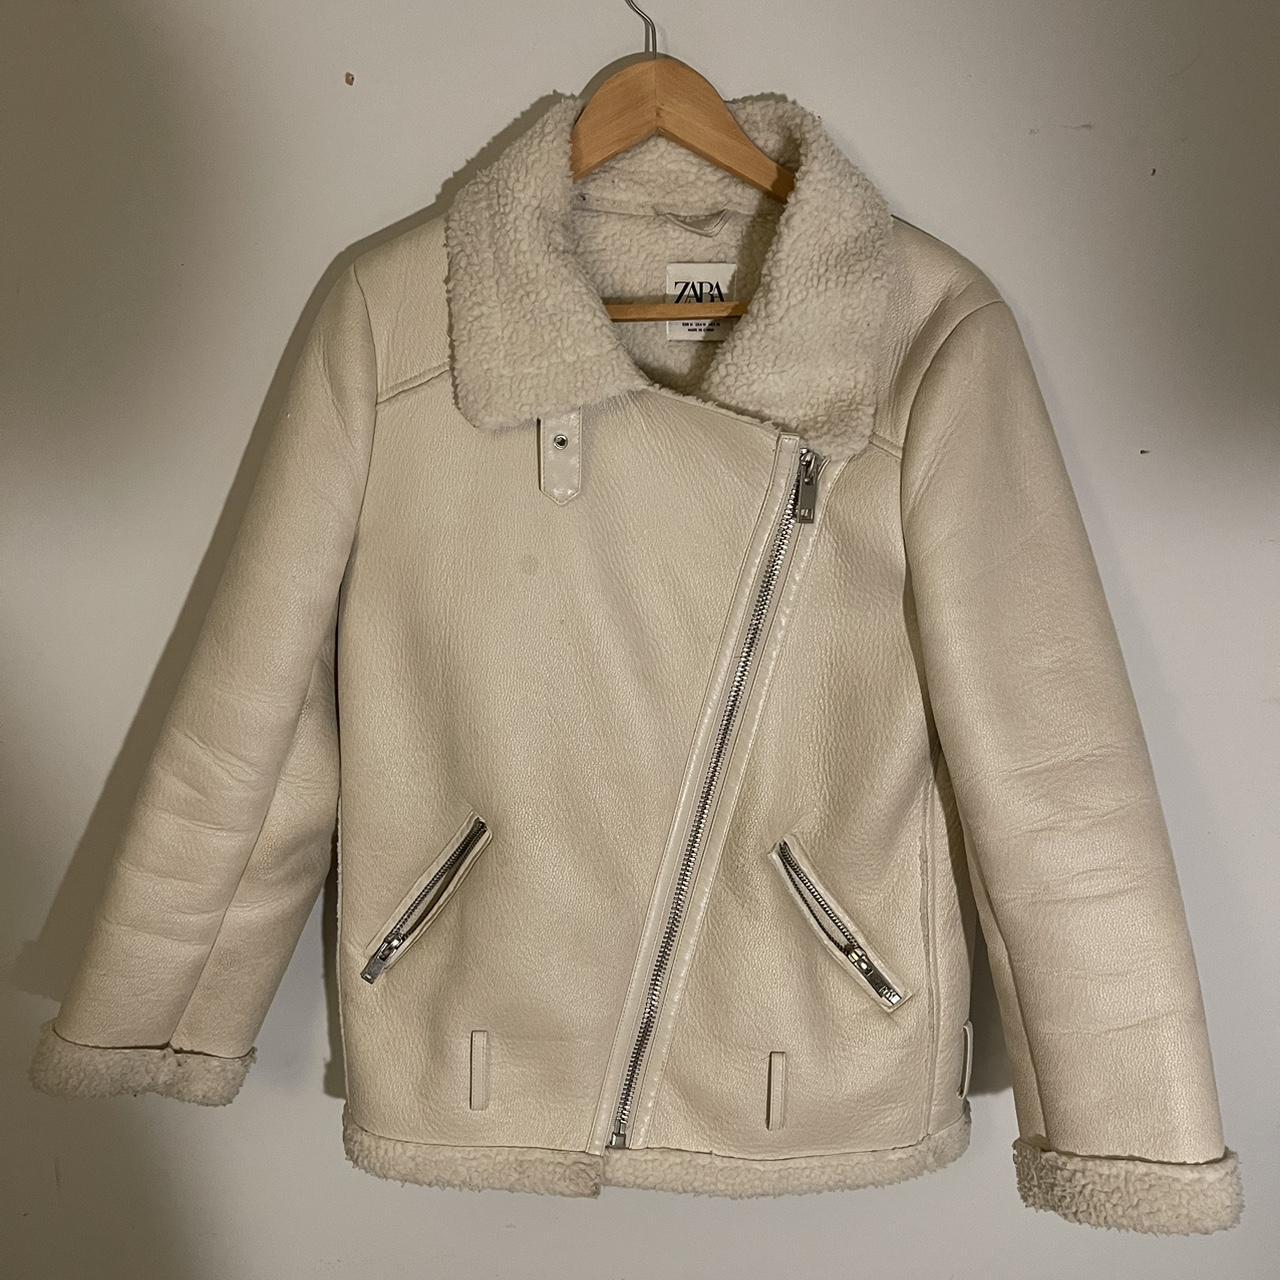 ZARA faux Shearling Biker Jacket 🧥 Cream jacket... - Depop